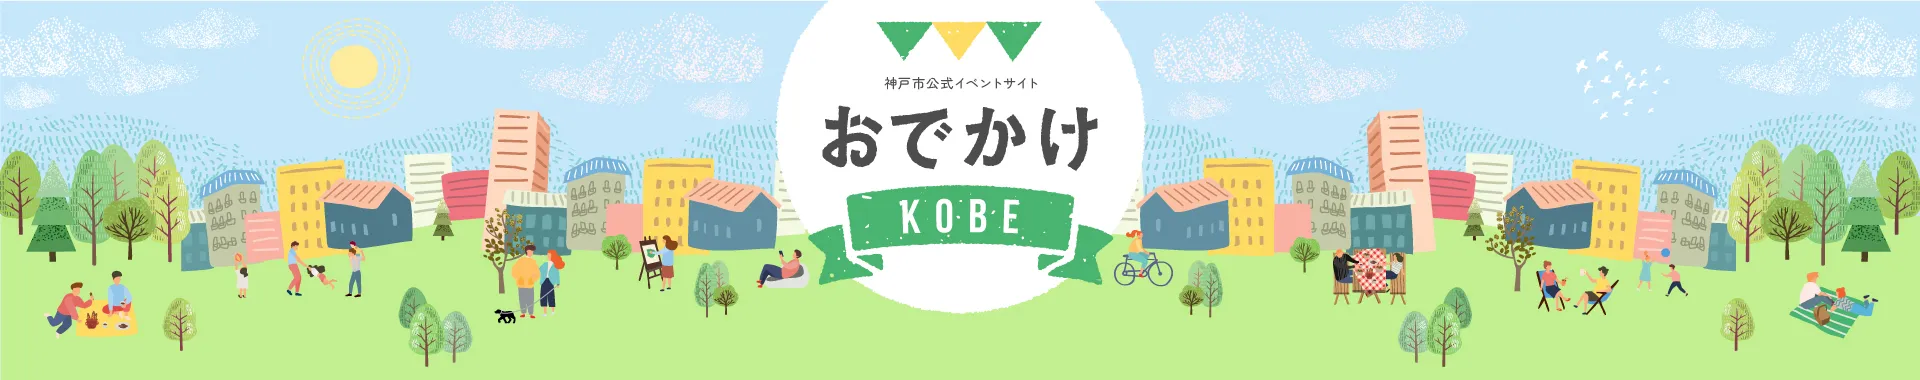 神戸市イベント情報サイト おでかけKOBE